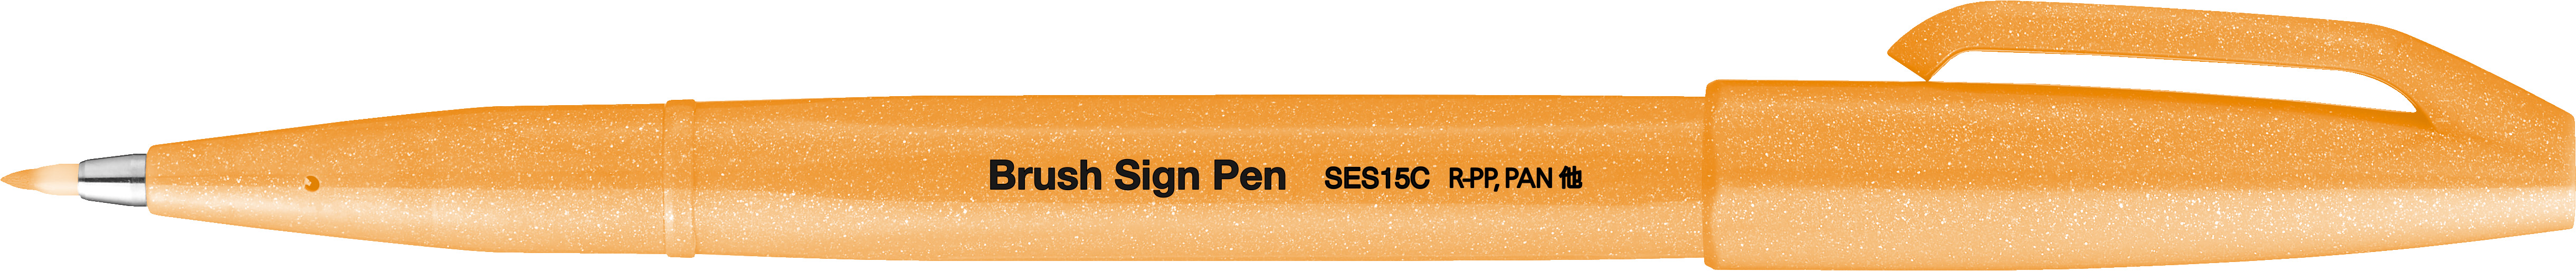 Pinselstift Brush Sign Pen - Neon